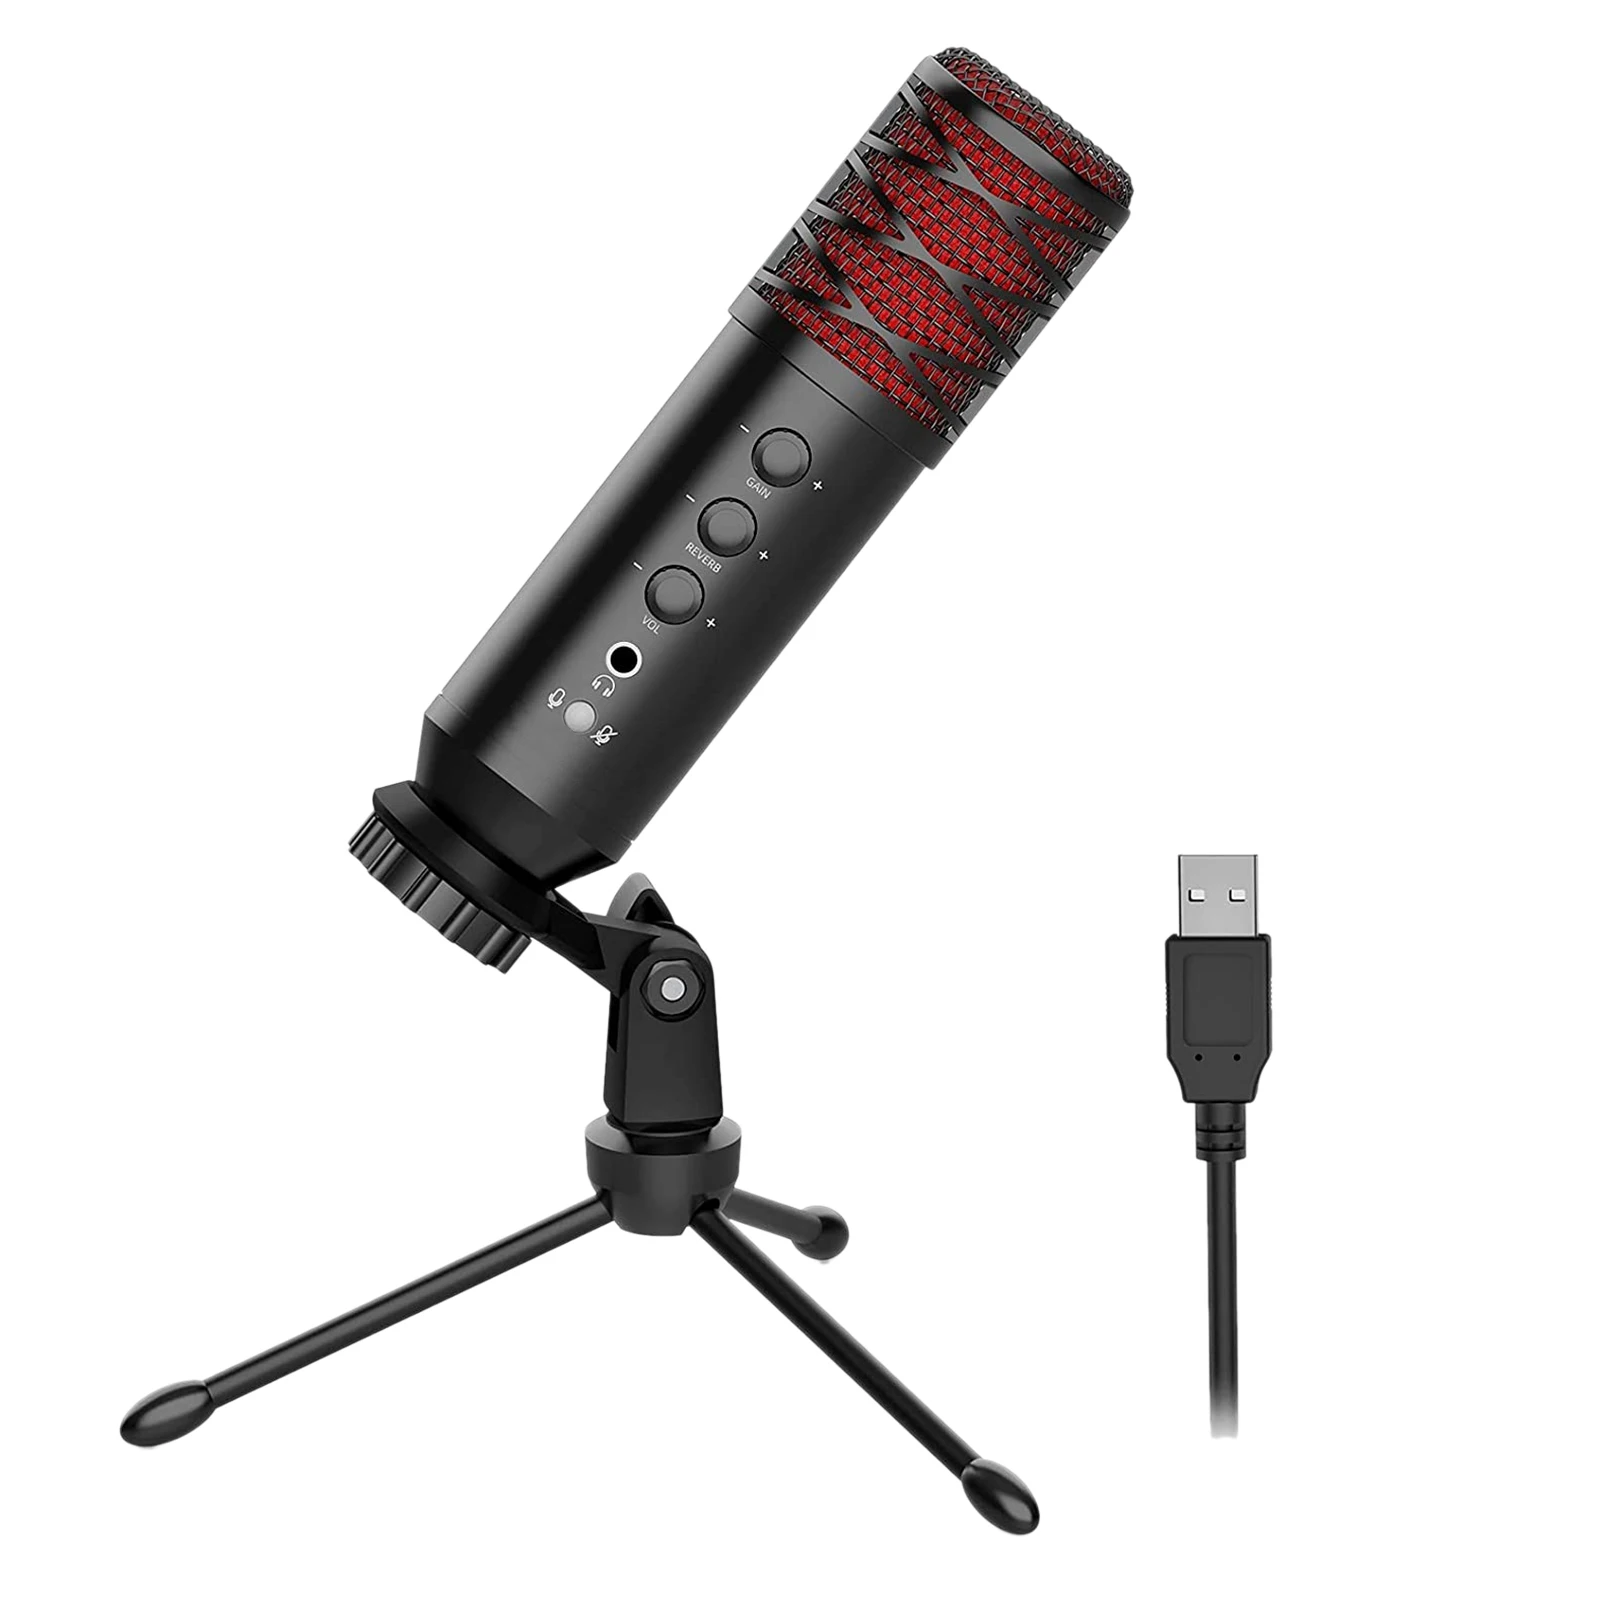 

Конденсаторный USB-микрофон со встроенным монитором и эффектом эха